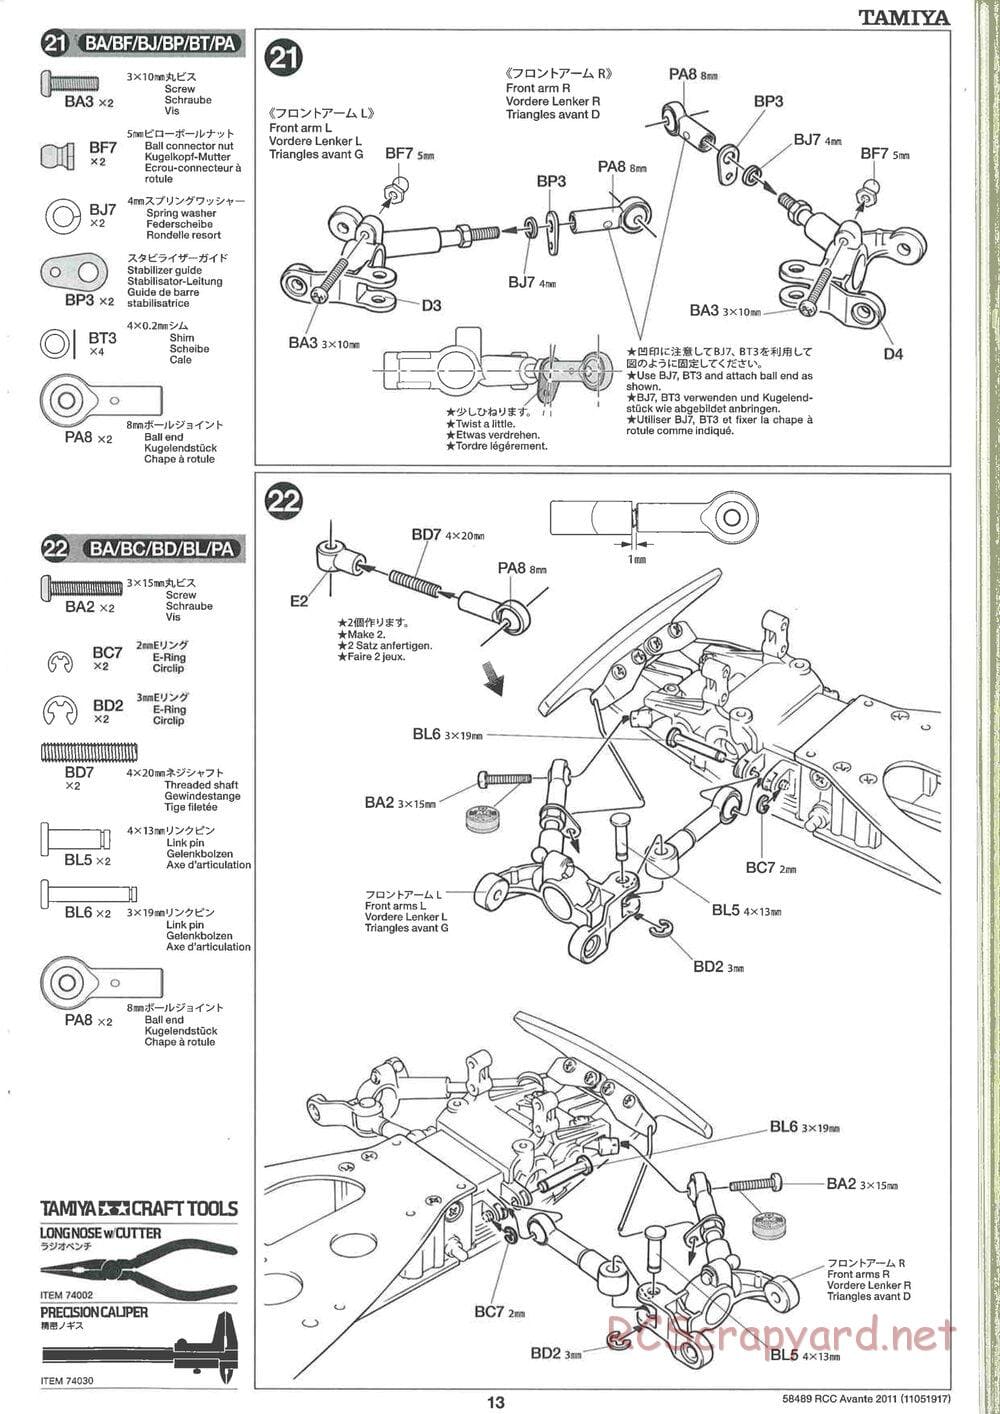 Tamiya - Avante 2011 - AV Chassis - Manual - Page 13